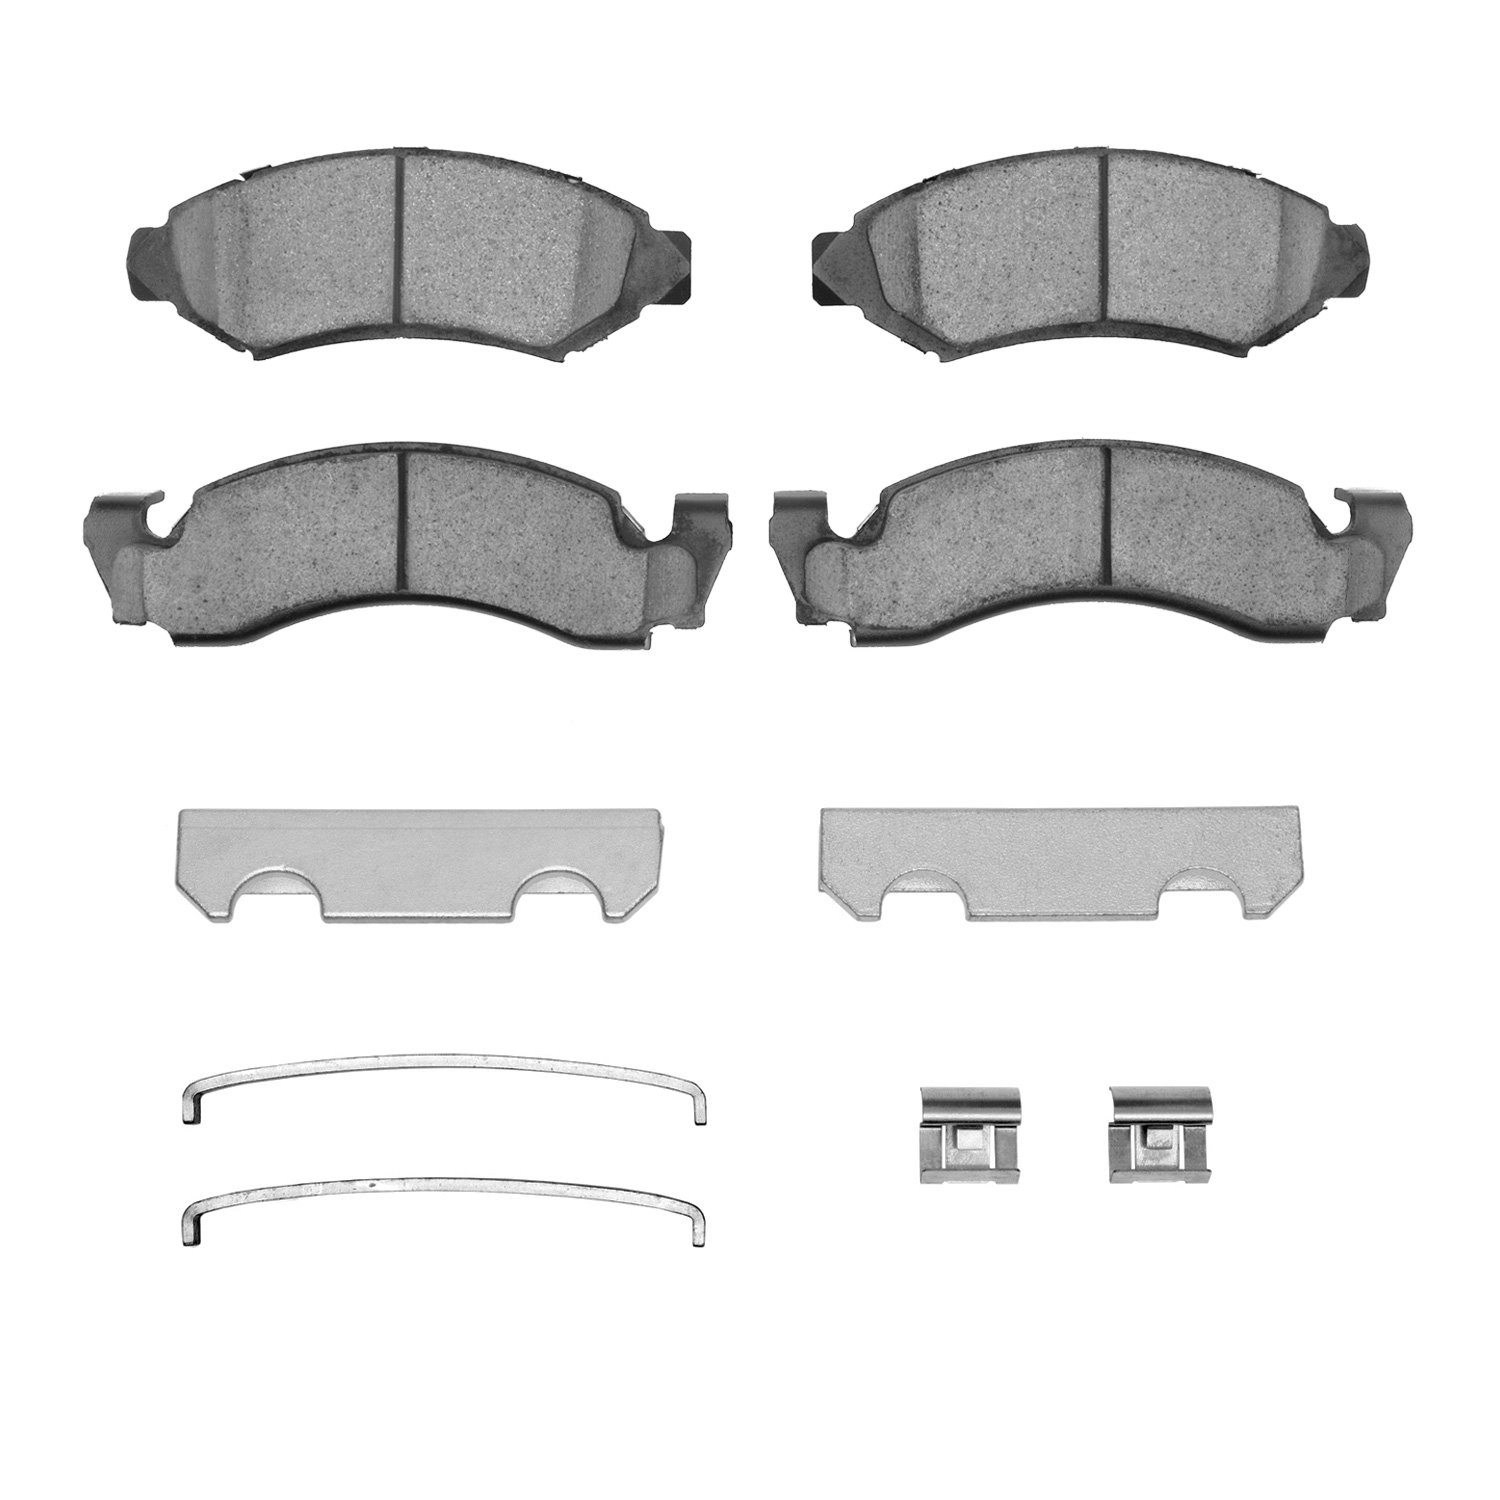 Super-Duty Brake Pads & Hardware Kit, 1973-1985 Fits Multiple Makes/Models, Position: Front